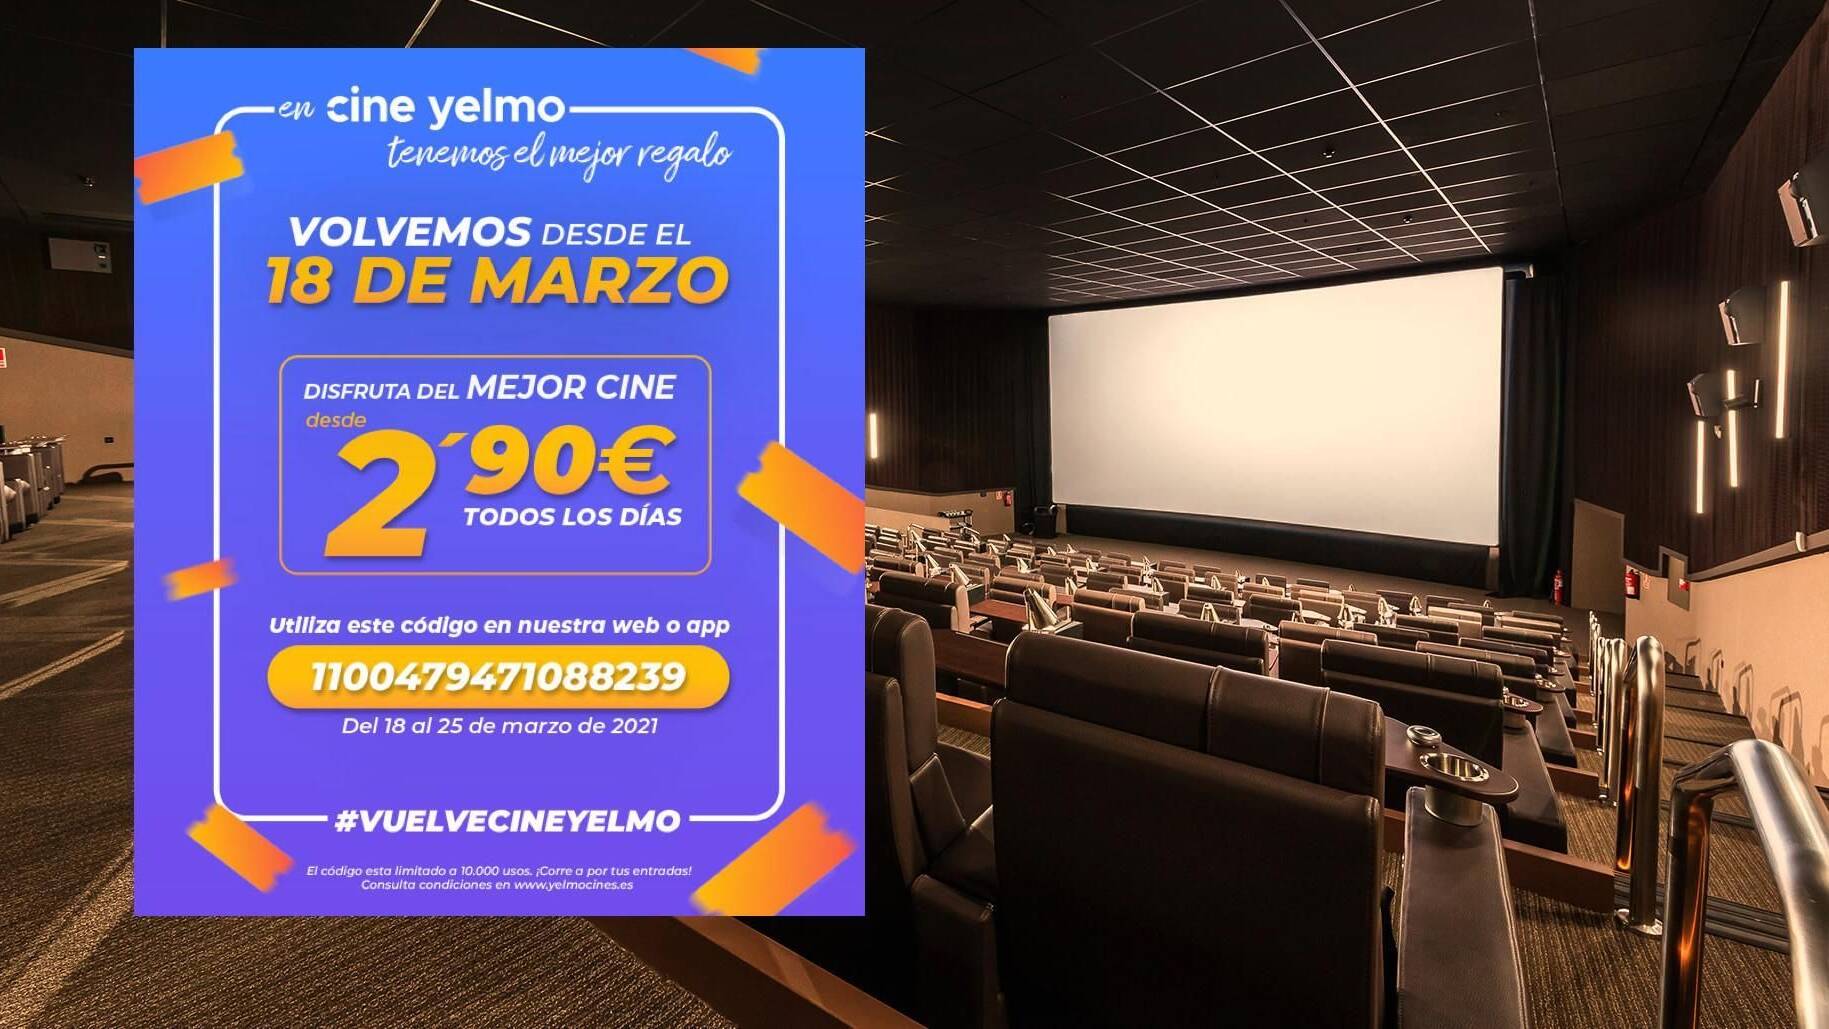 Yelmo nos invita volver a cines con entradas a 2,90 euros - Random